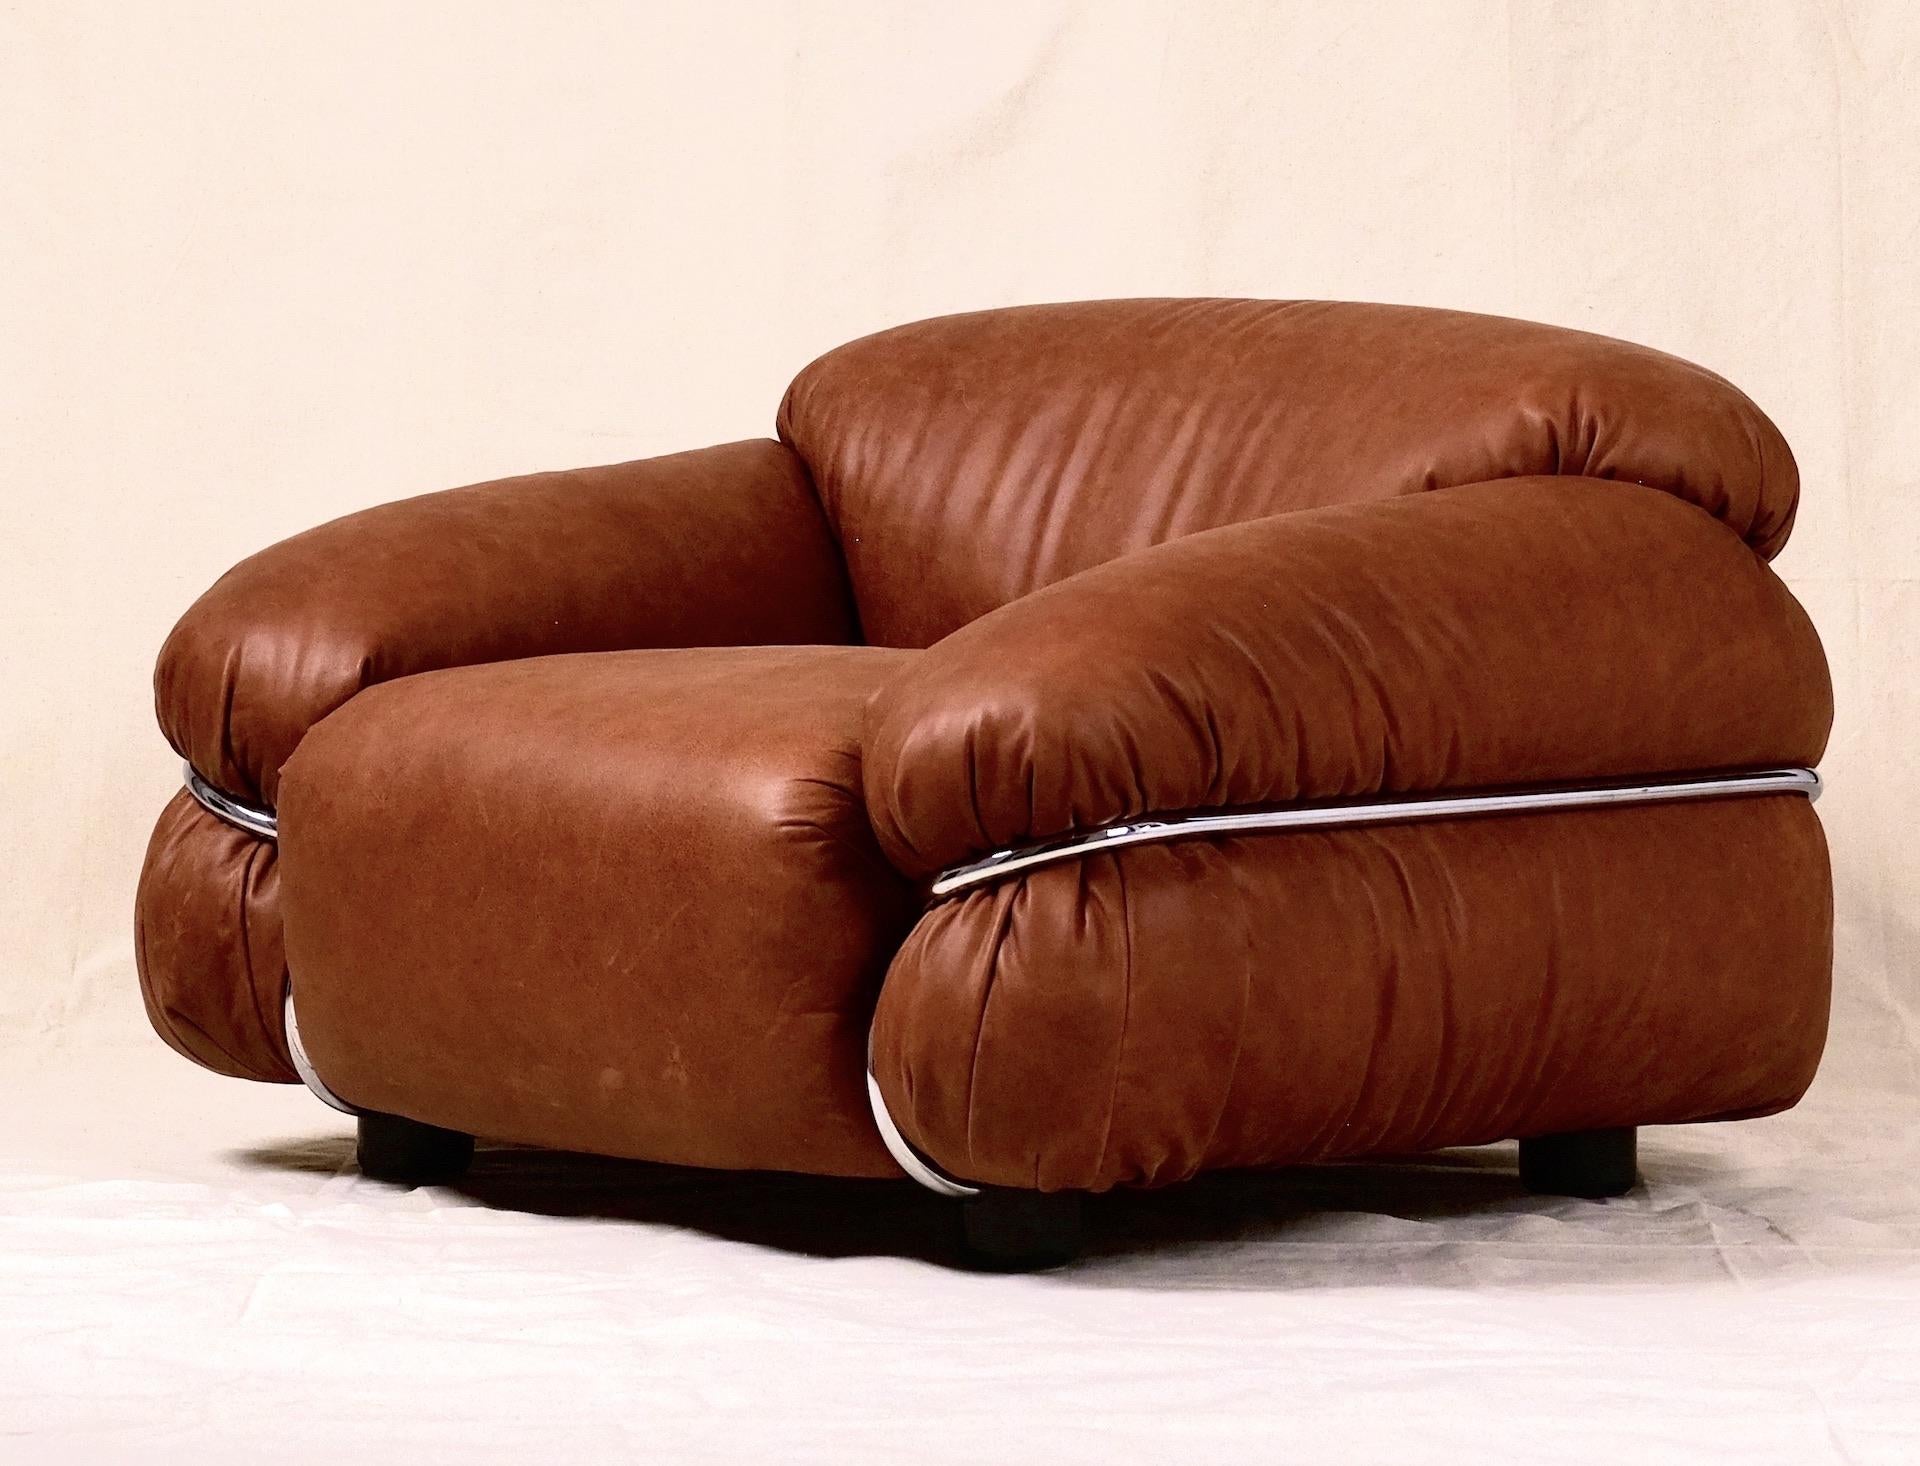 Original 'Sesann'-Loungesessel, entworfen von Gianfranco Frattini für Cassina, Italien der 1970er Jahre.

Bitte verwechseln Sie diese Originalstühle nicht mit den neueren, billigeren Neuauflagen.

Diese Sessel wurden vollständig restauriert und mit